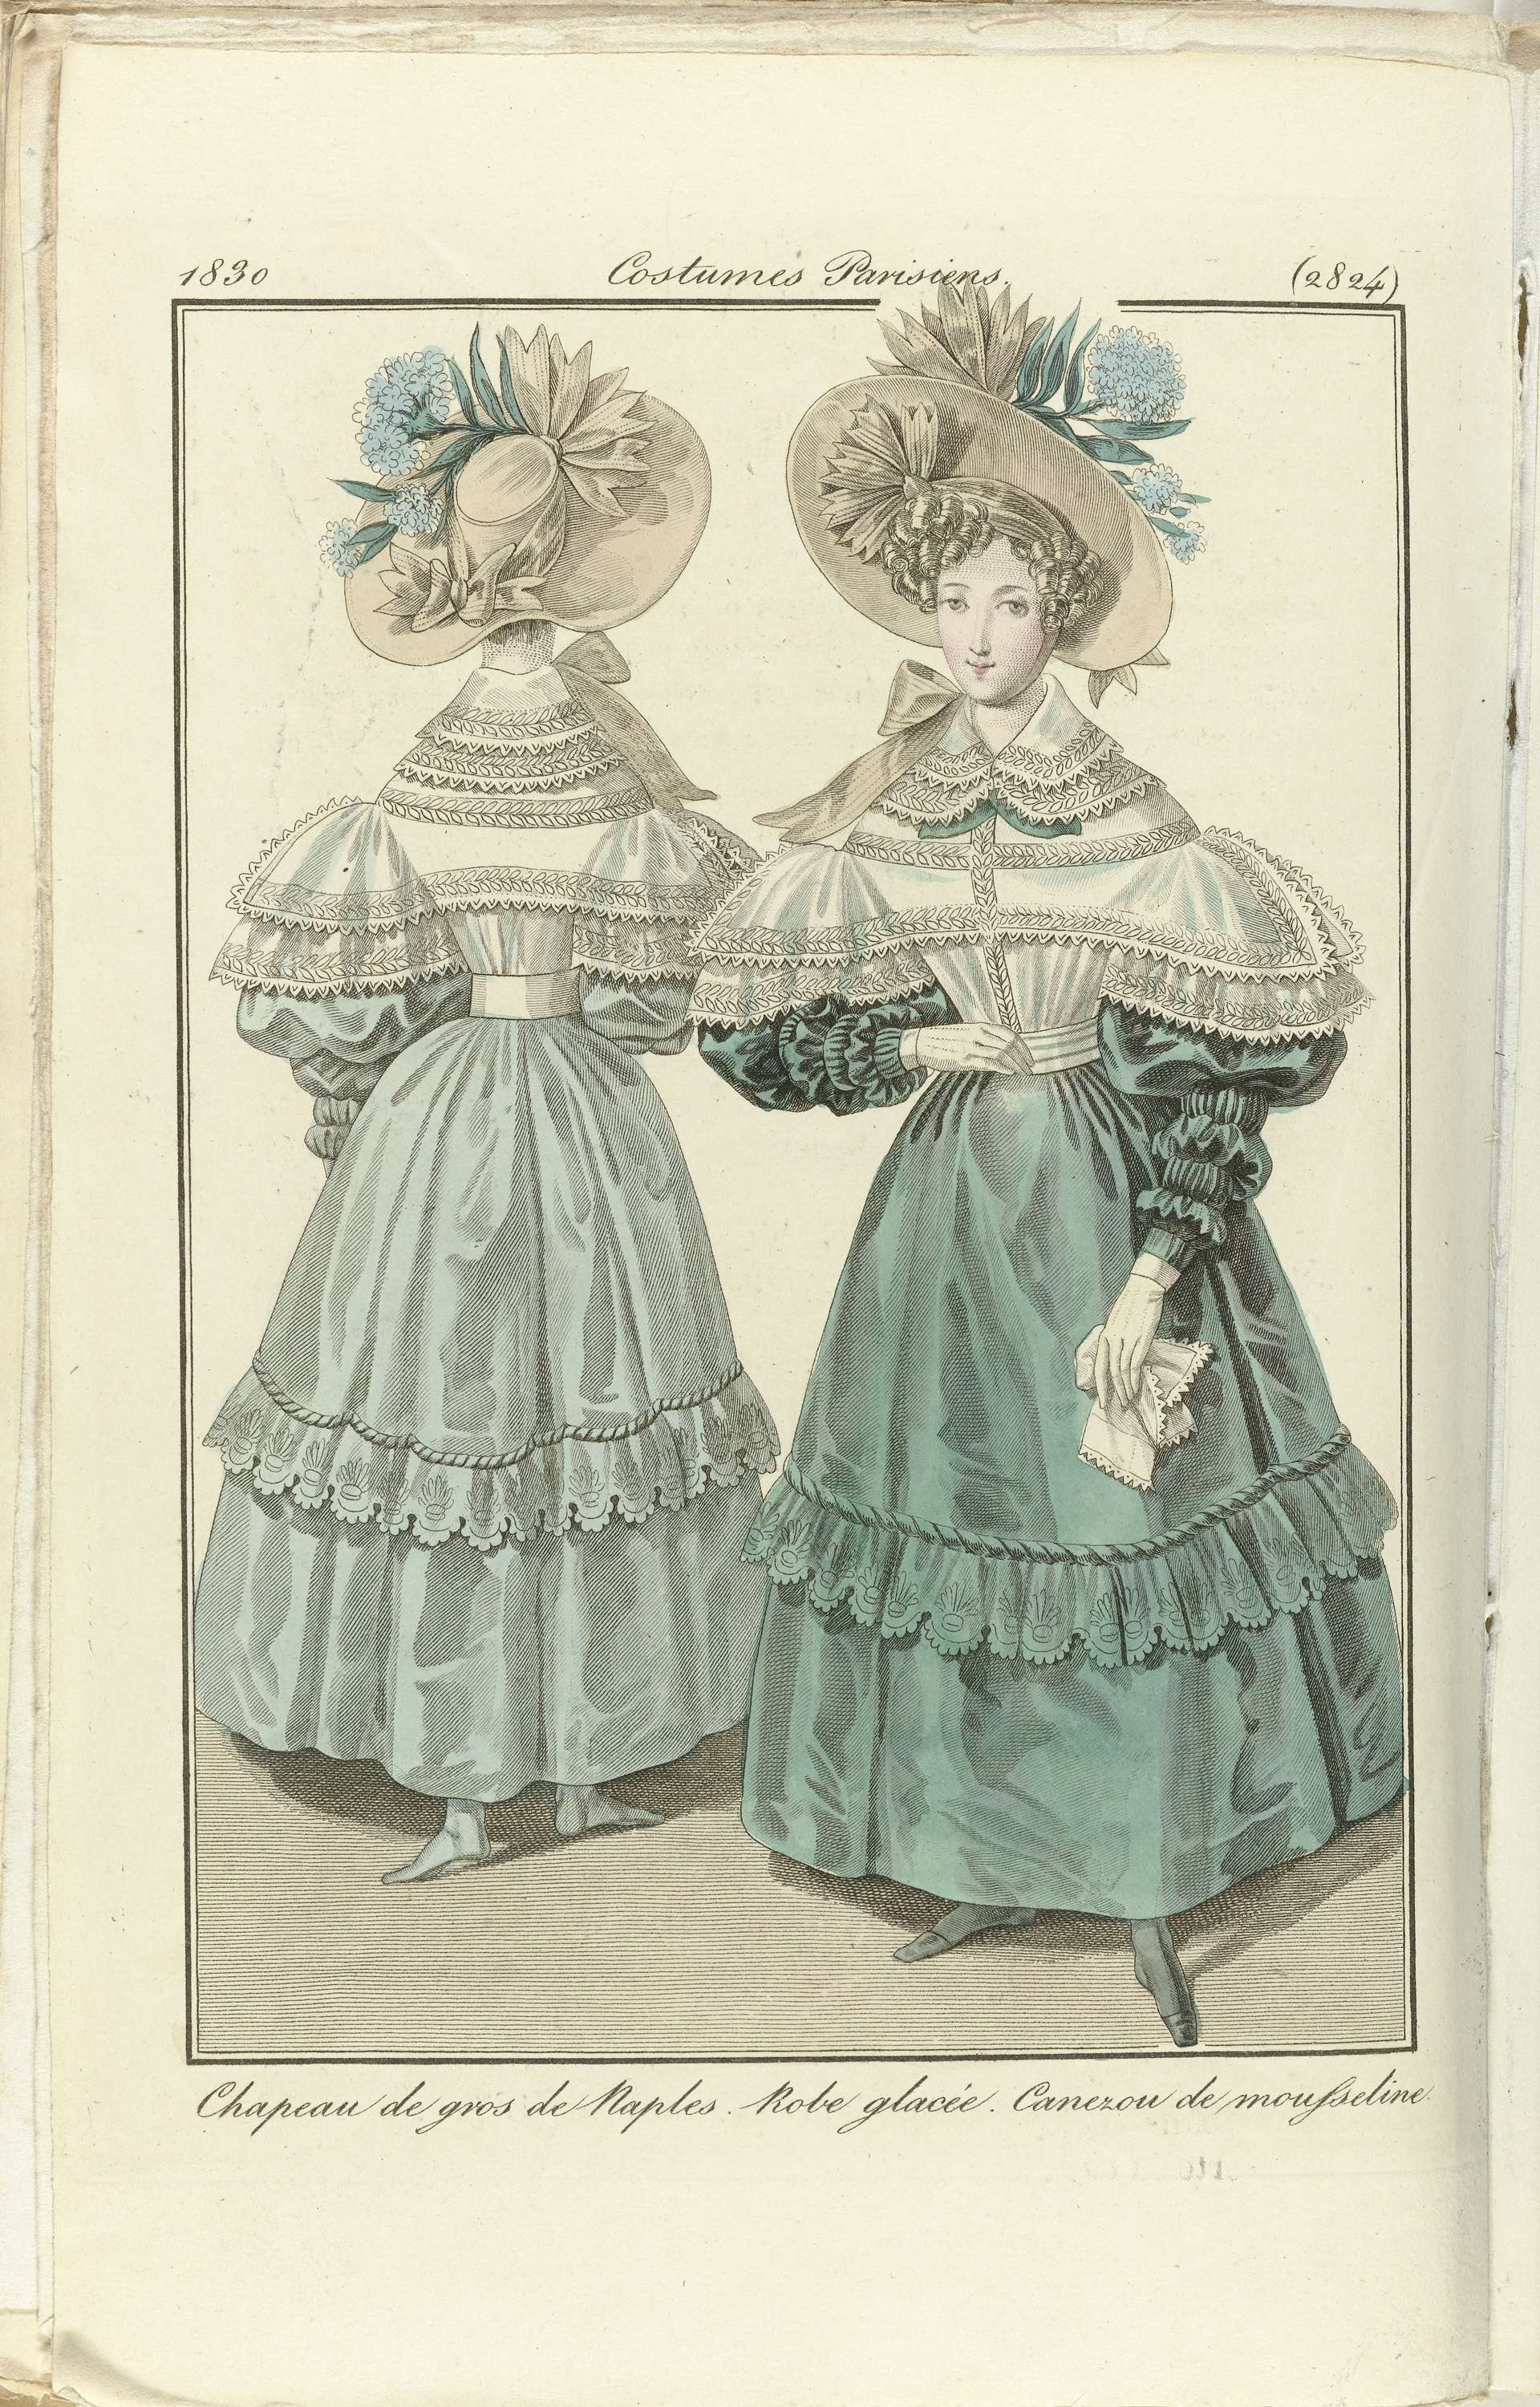 Journal des Dames et des Modes 1830, Costumes | CanvasPrints.com